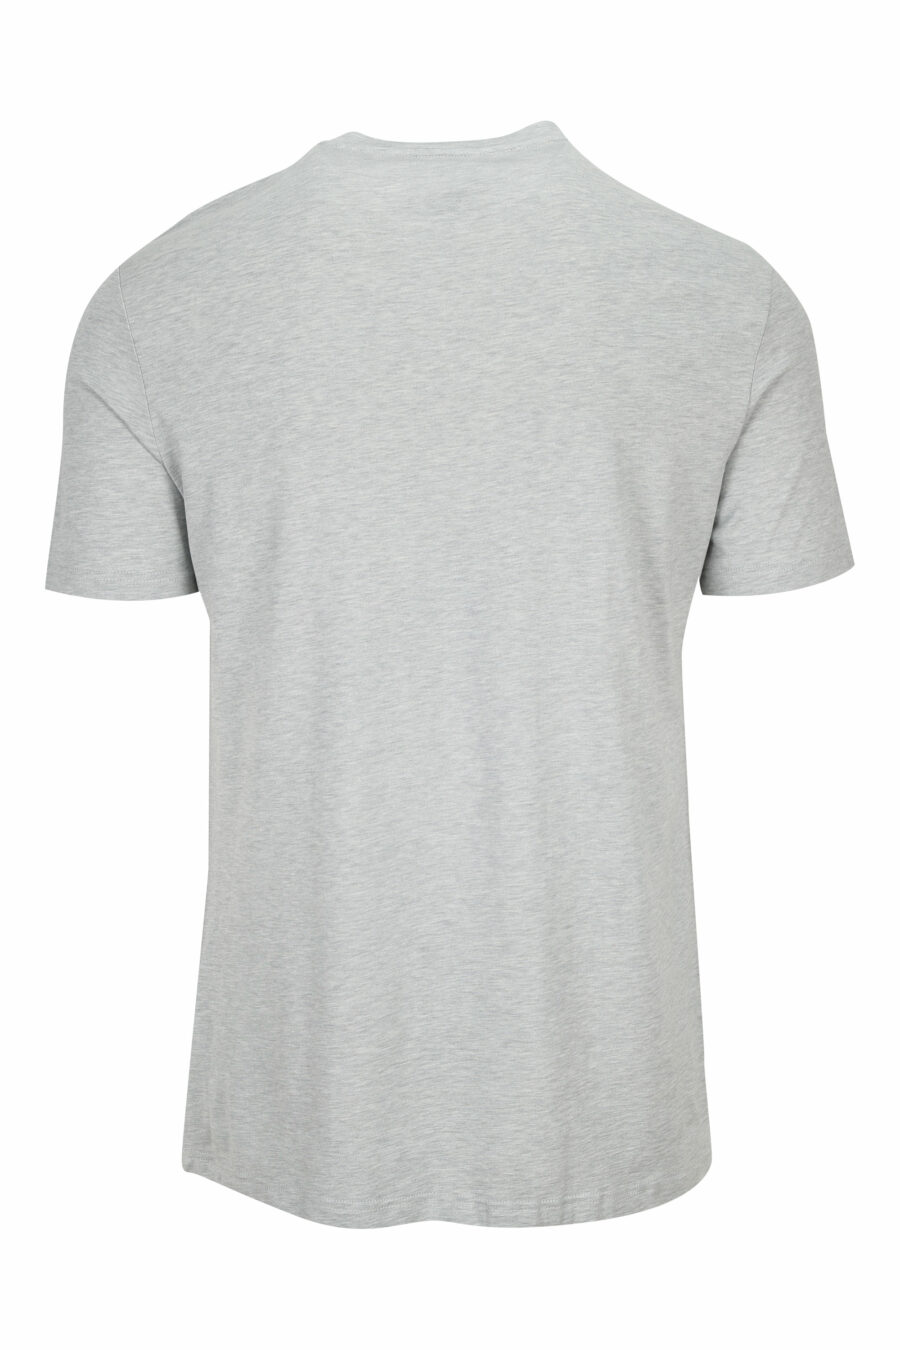 T-shirt gris avec minilogue noir - 8032674525109 1